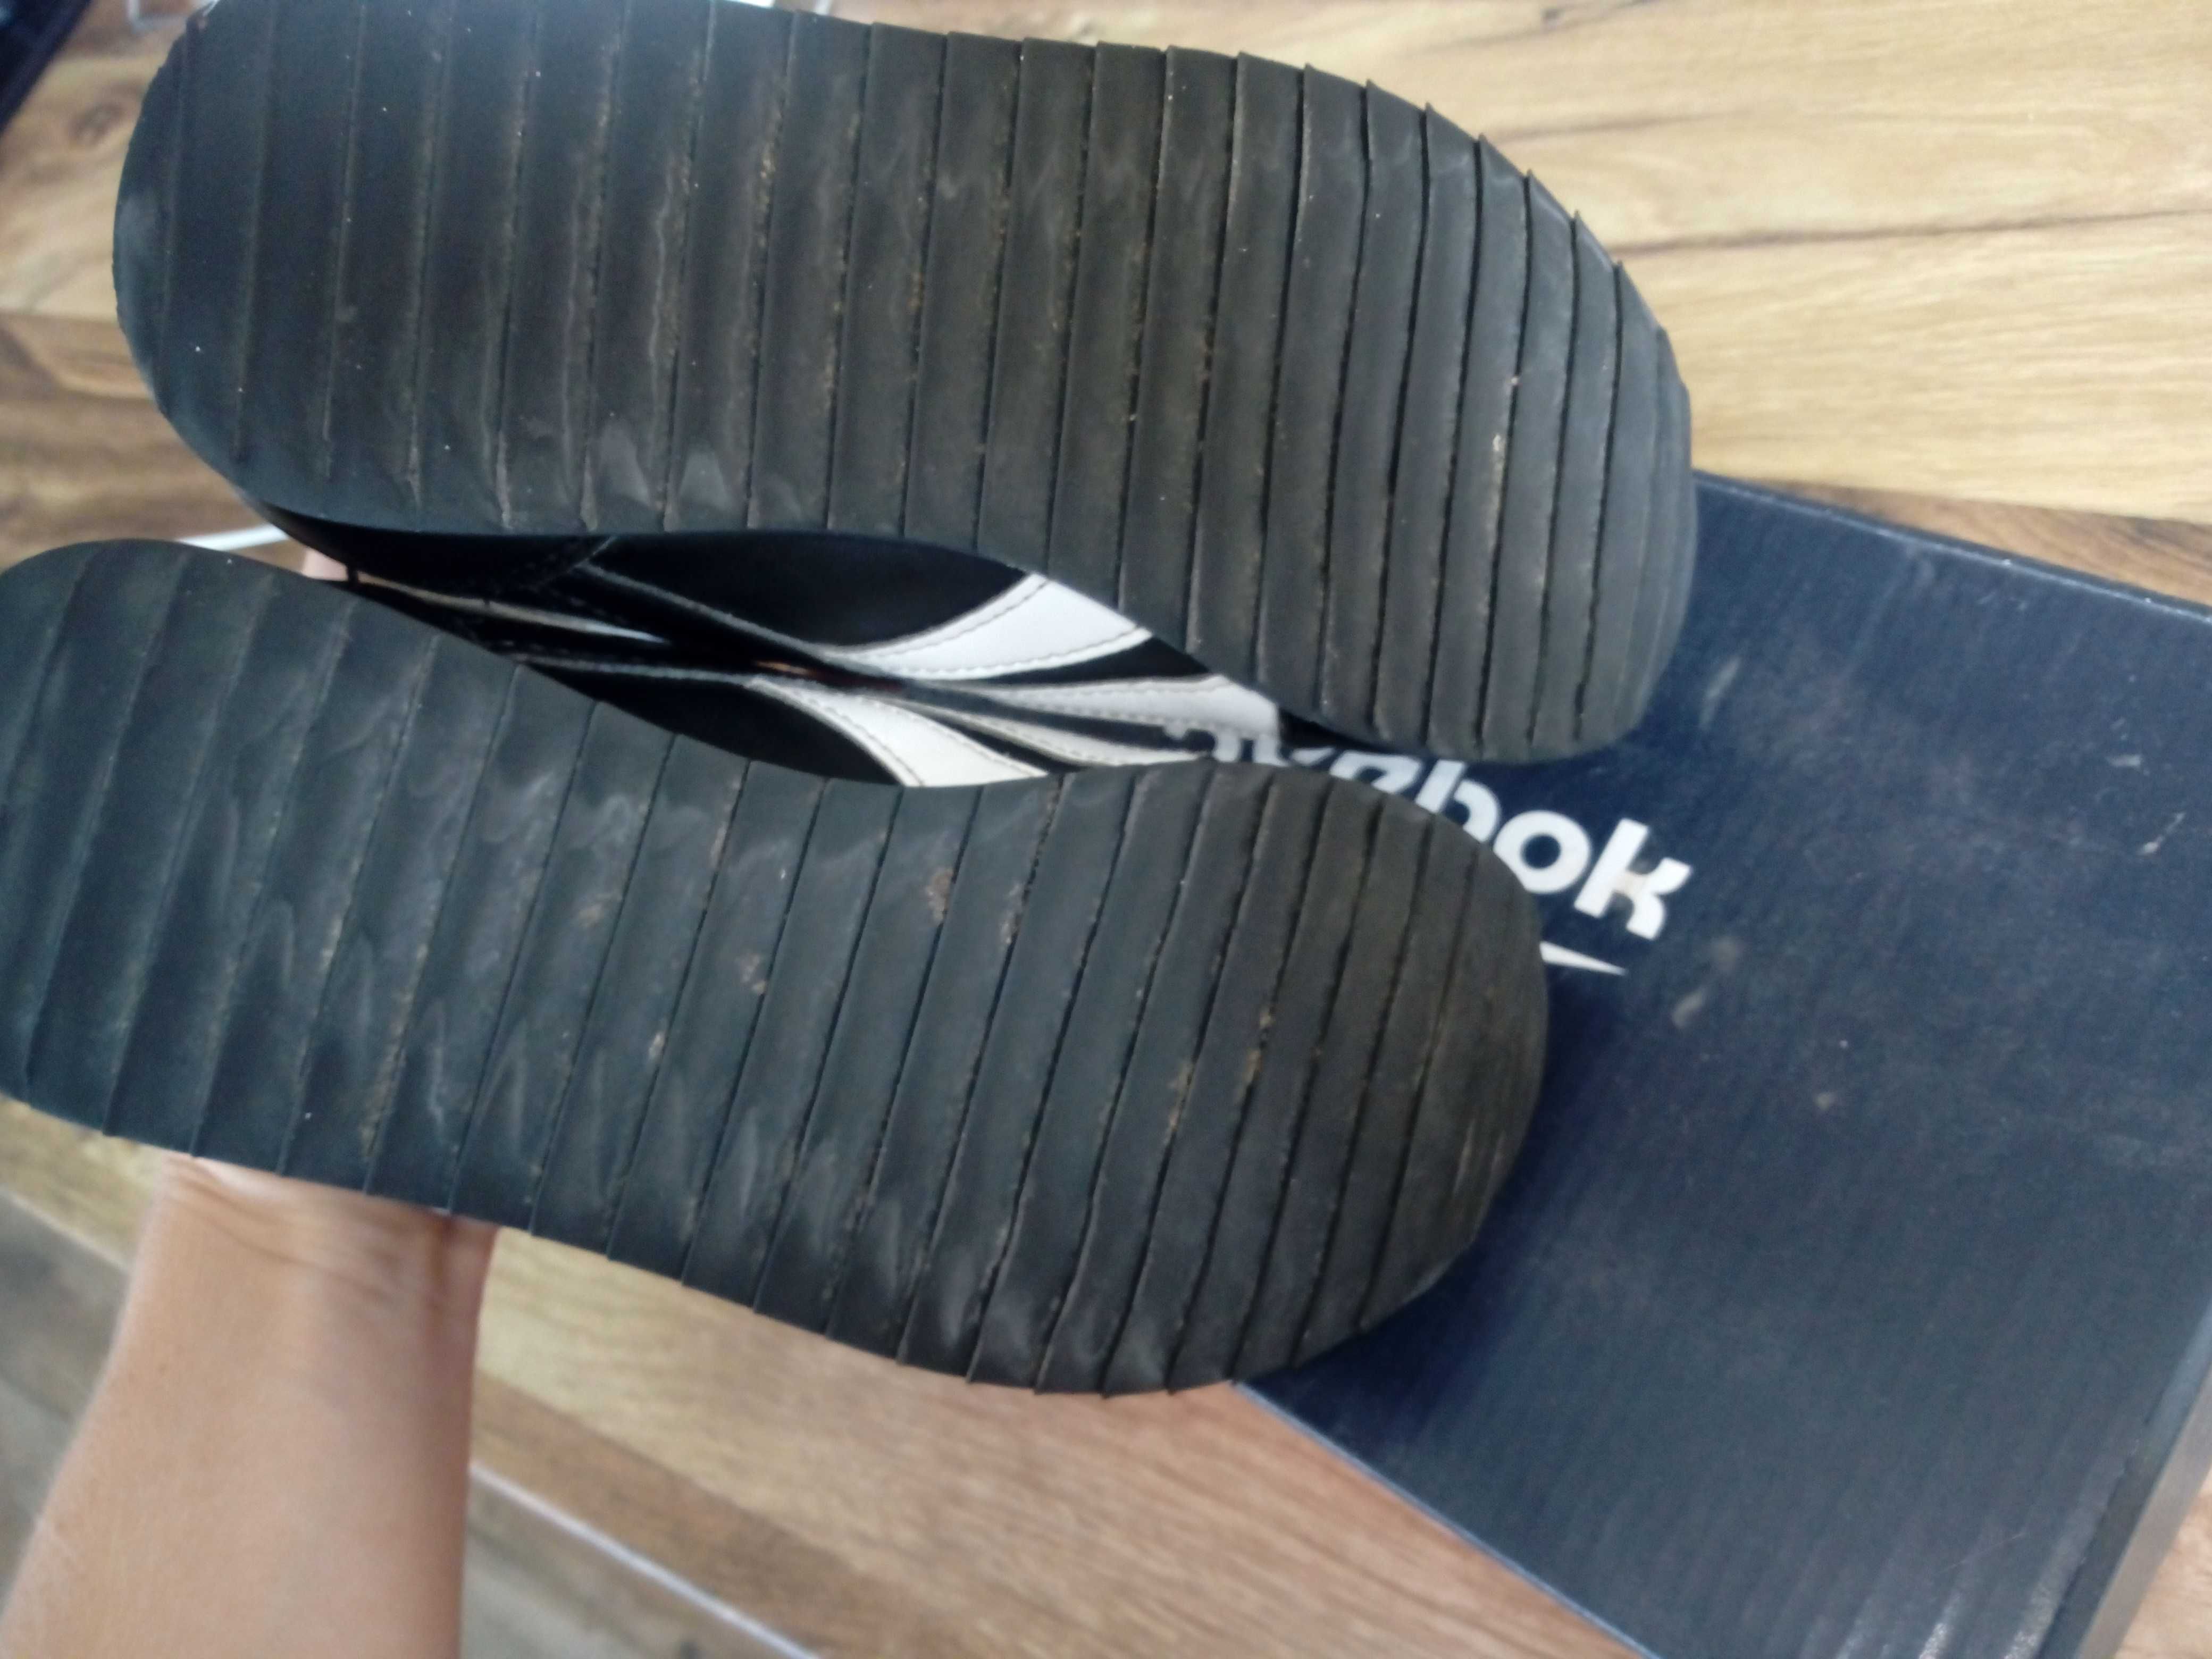 Buty adidasy sneakersy chłopięce Reebok Royal Classic r. 31, 19,5cm